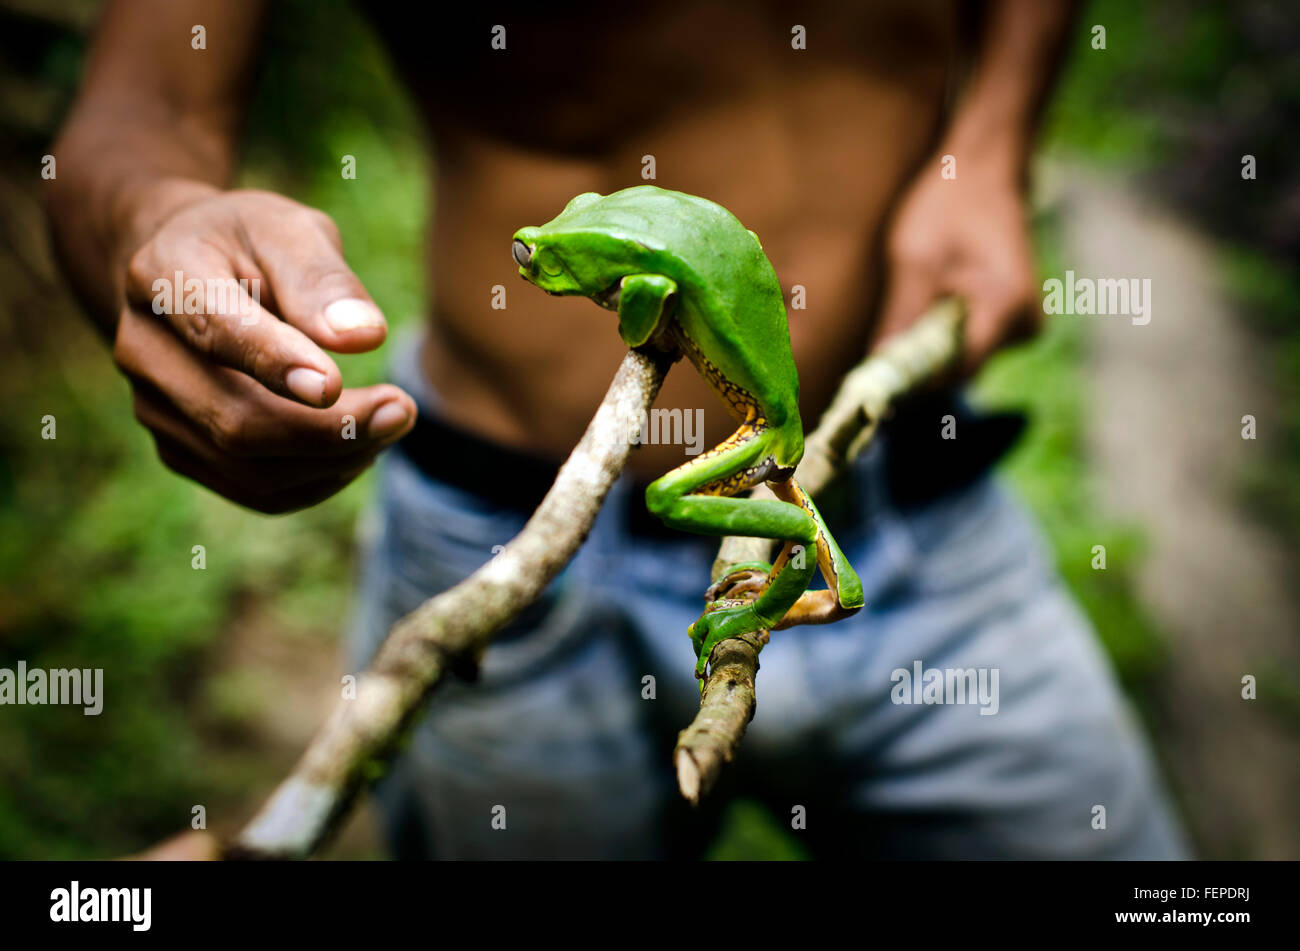 Matses tribesman celebración Kambo frog utilizado para extraer el veneno, potente medicina amazónica, Iquitos, Perú Foto de stock